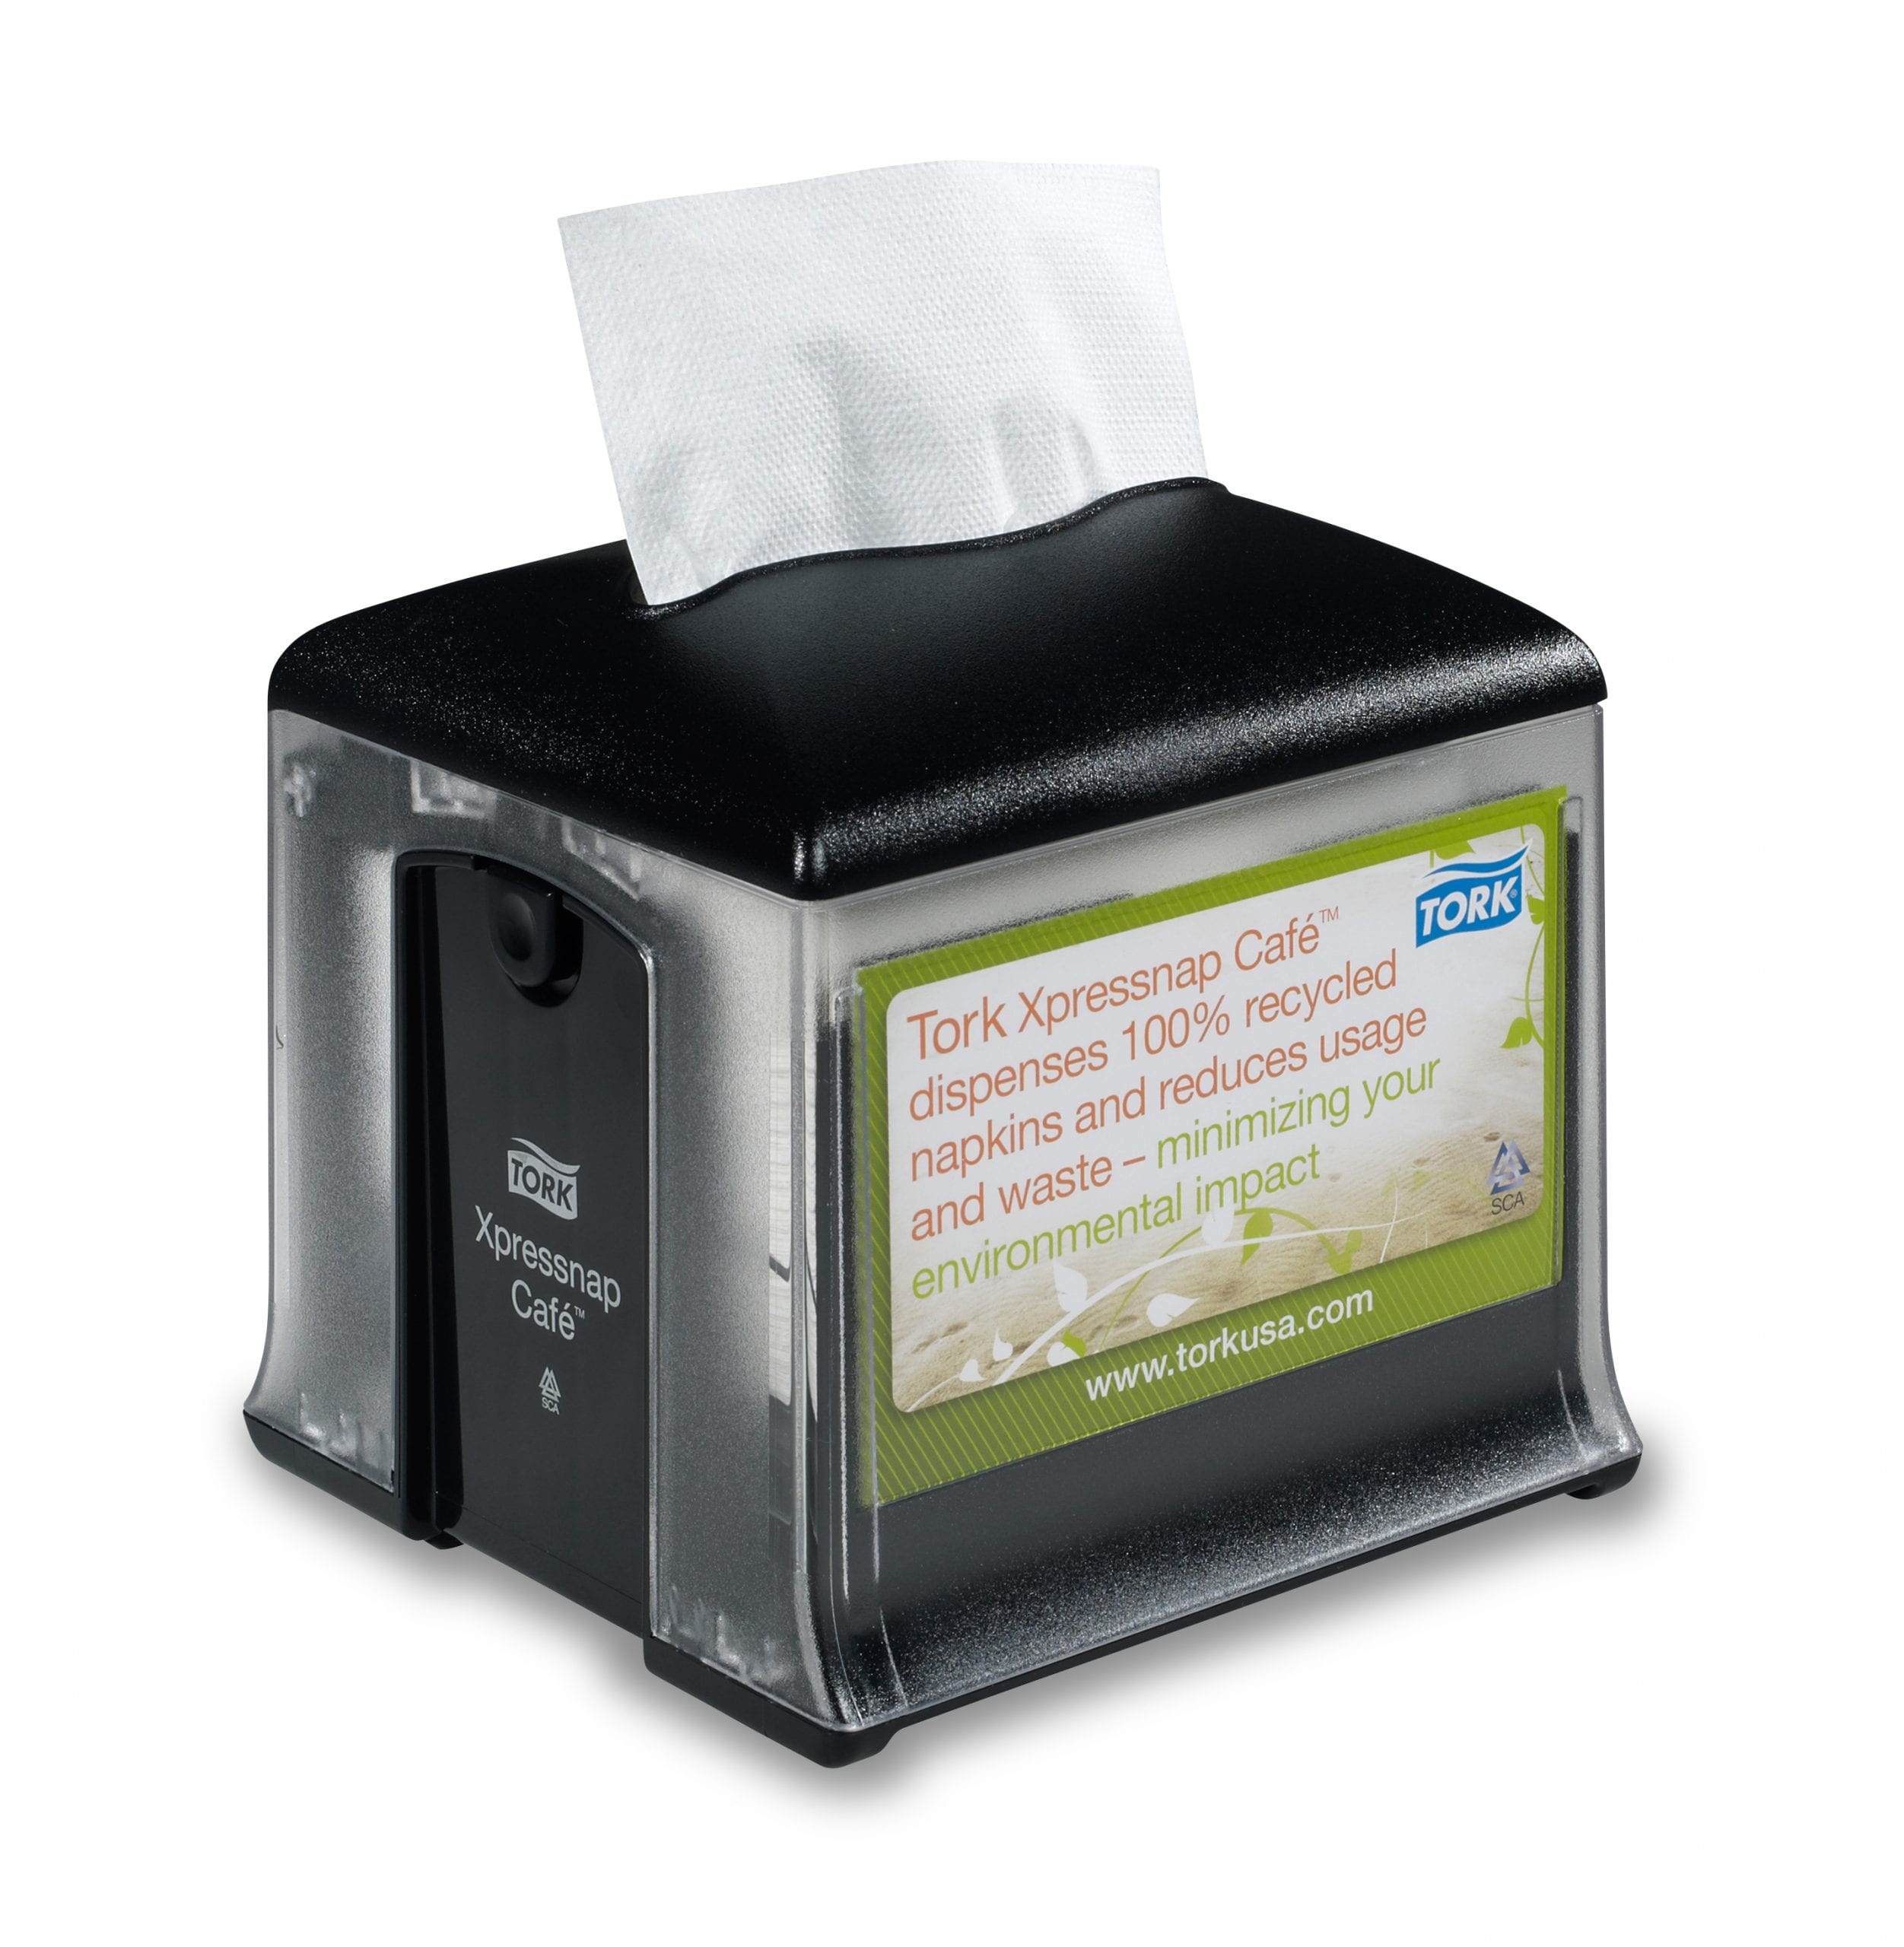 p2350-tork-xpressnap-cafe-napkin-dispenser-dependable-plastic